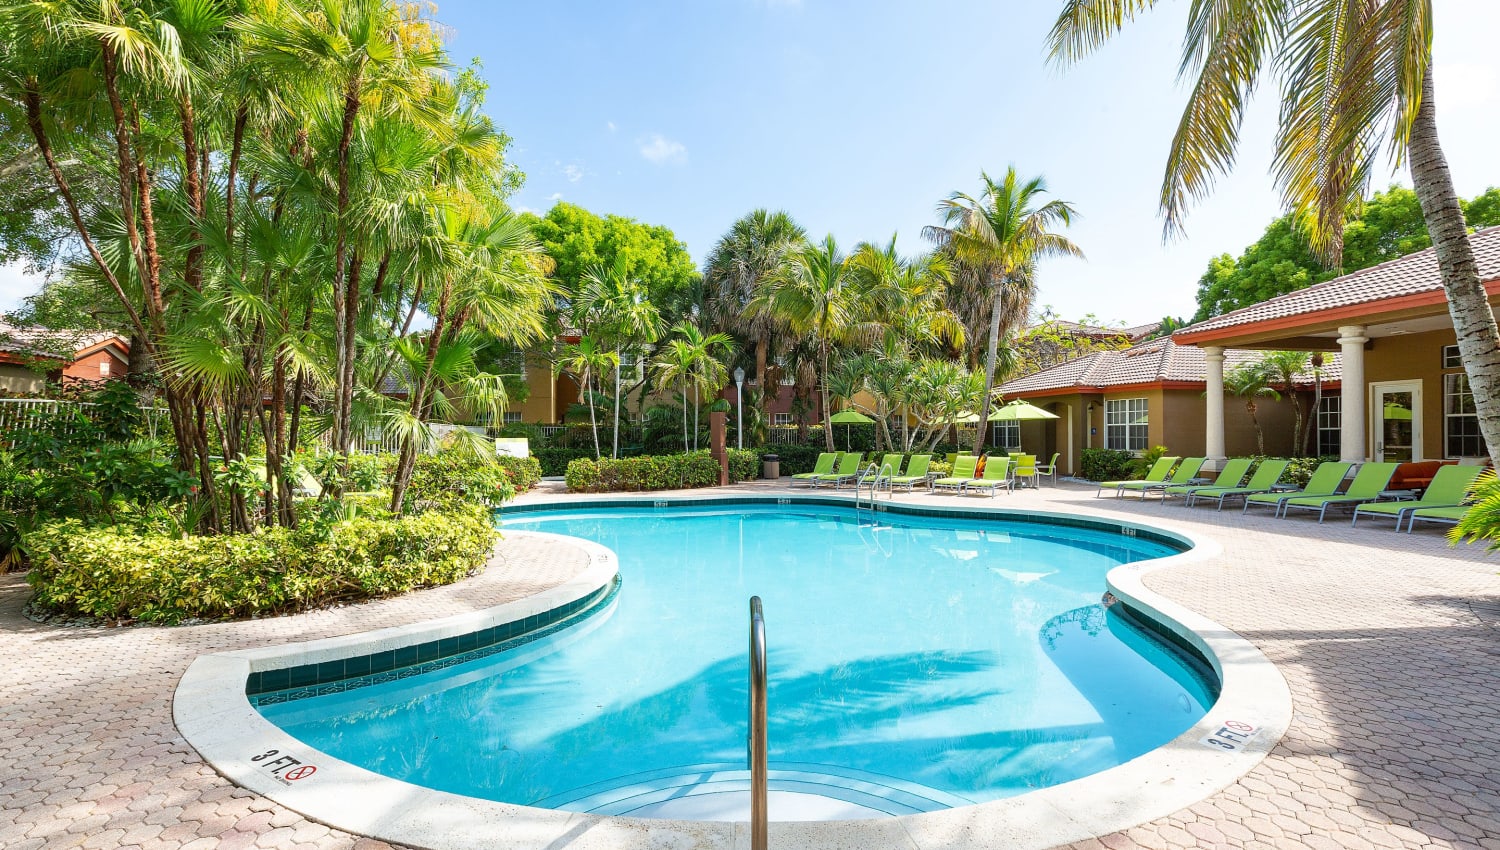 Pool at Villas of Juno Apartments in Juno Beach, Florida